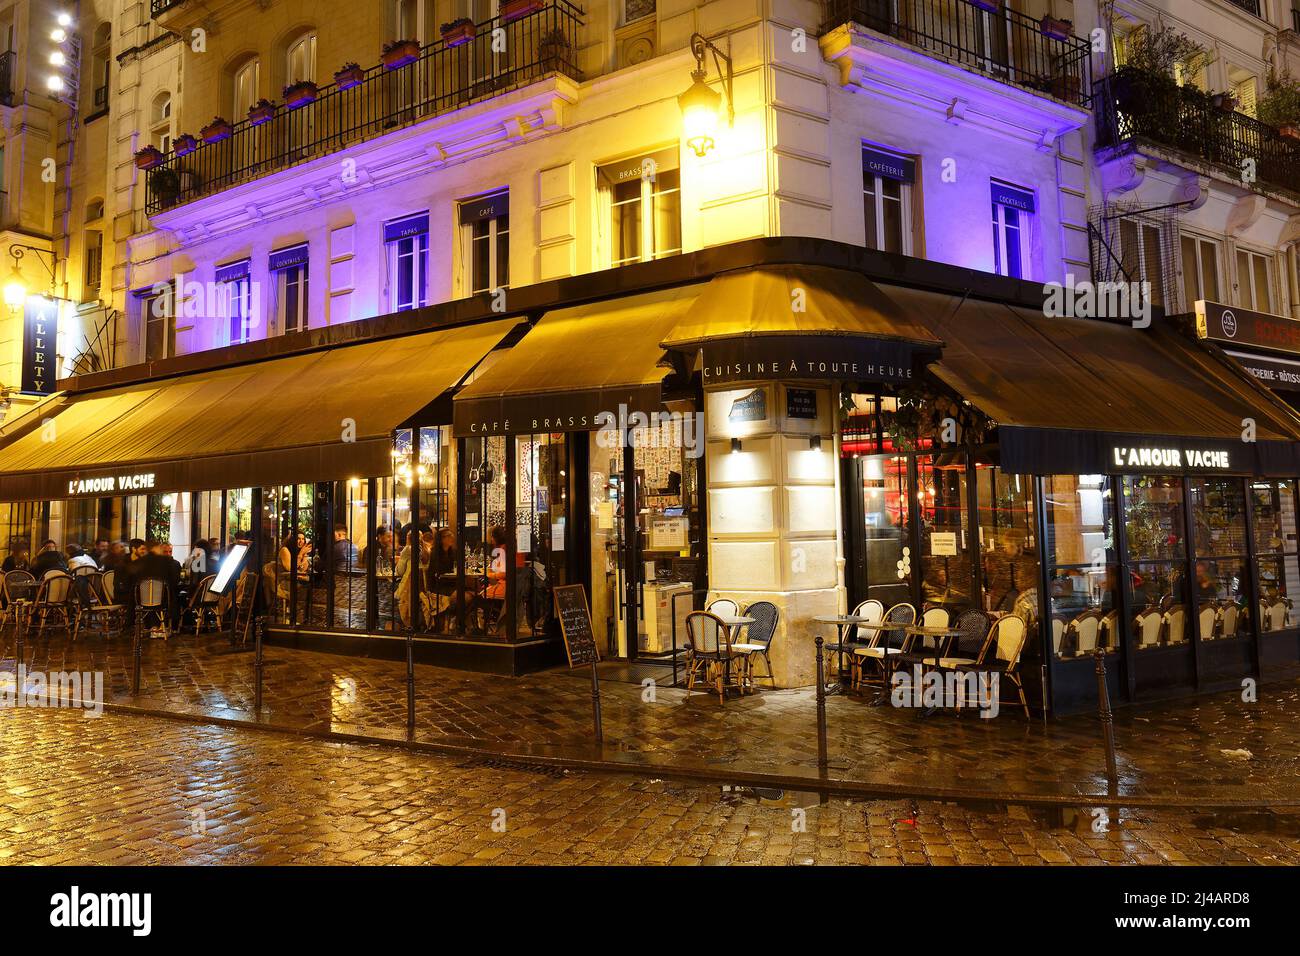 L'Amour vache est un restaurant français traditionnel situé sur le boulevard bonne Nouvelle, près de la porte Saint Denis à Paris. Banque D'Images